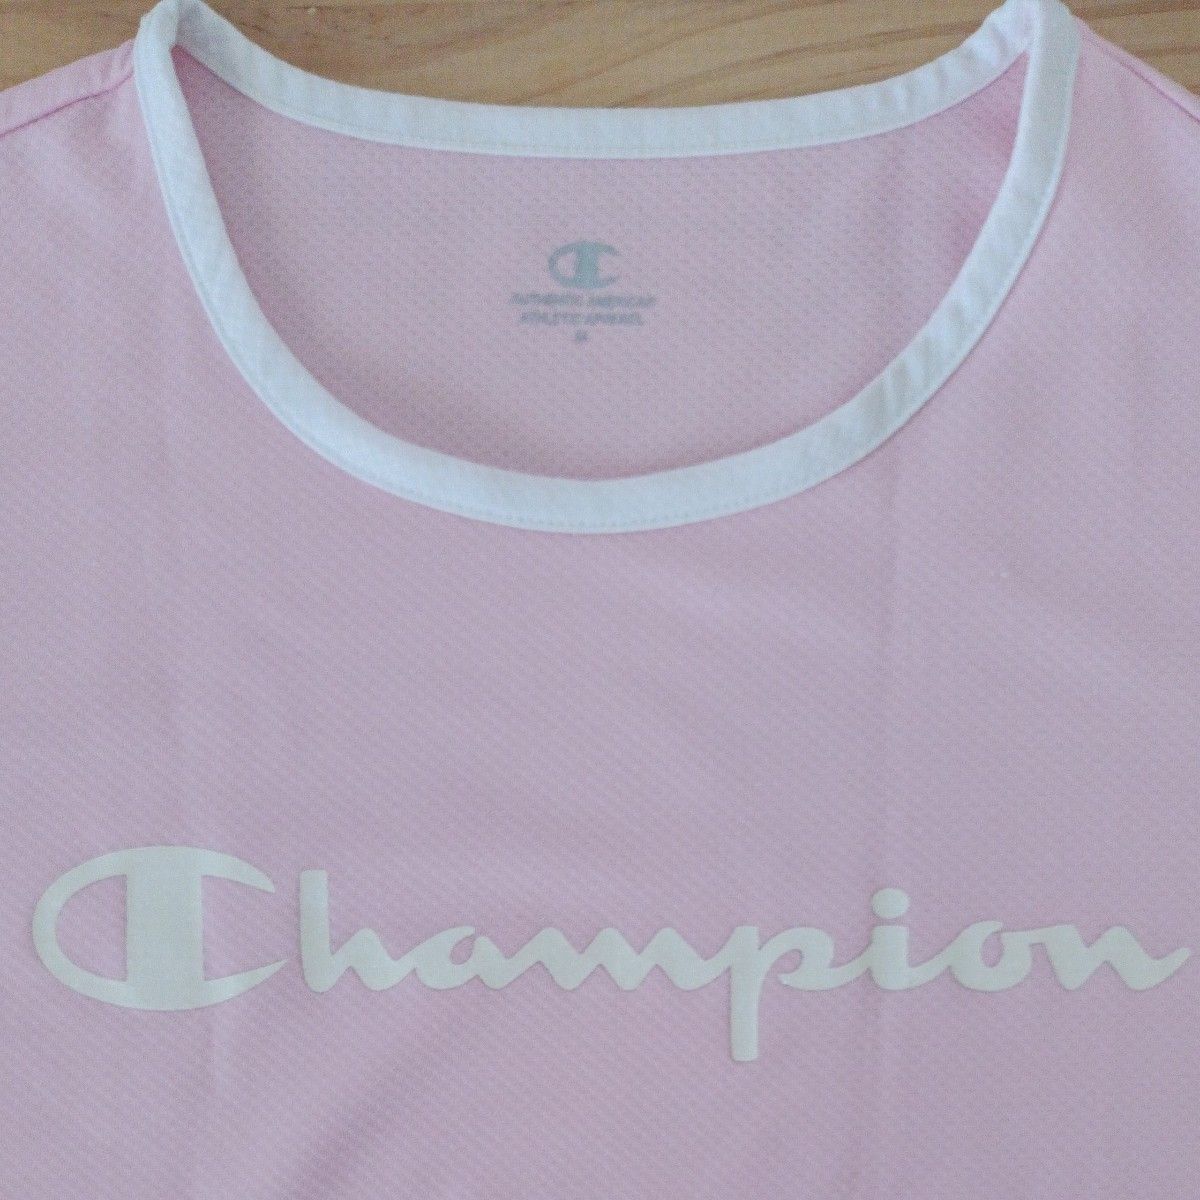 Champion 半袖 Tシャツ 2枚 レディース ピンク 黒 チャンピオン ブラック スポーツ ウェア ブラック